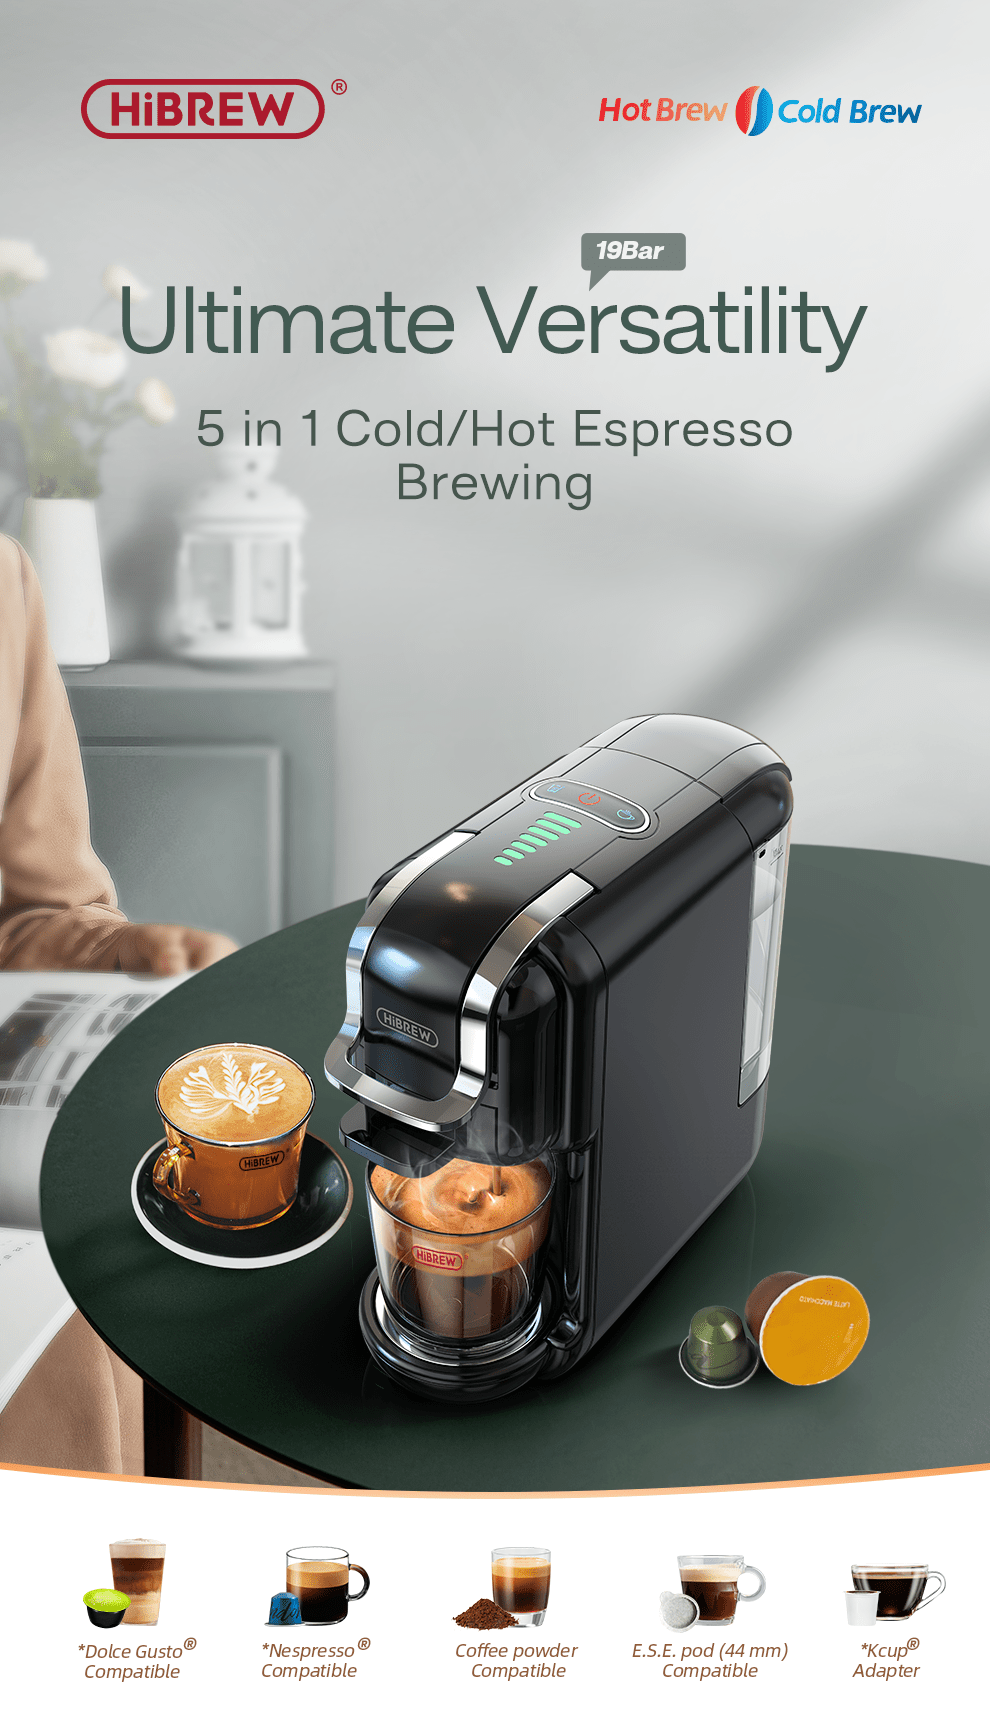 Compatible con Dolce Gusto y Nespresso, esta cafetera multicápsulas está a  precio mínimo hoy en